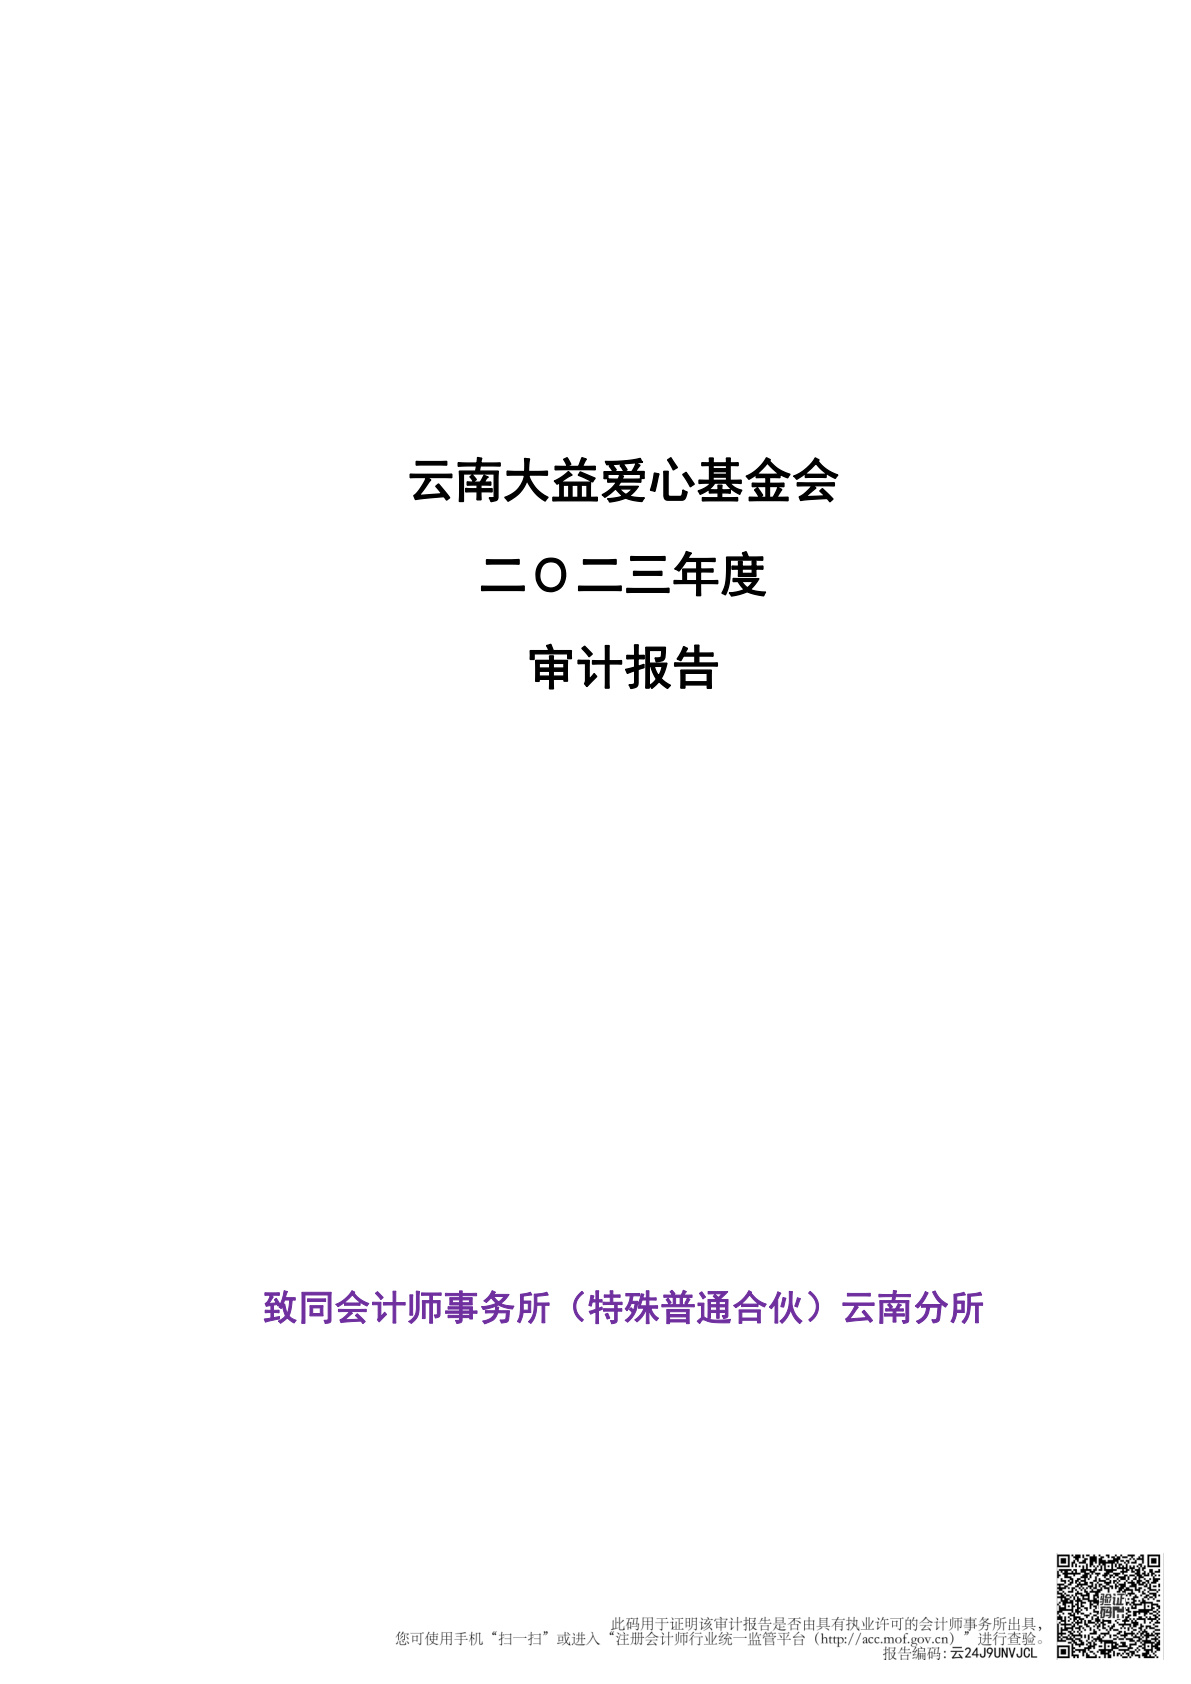 云南大益爱心基金会二Ｏ二三年度审计报告公示 (2024-03-30)